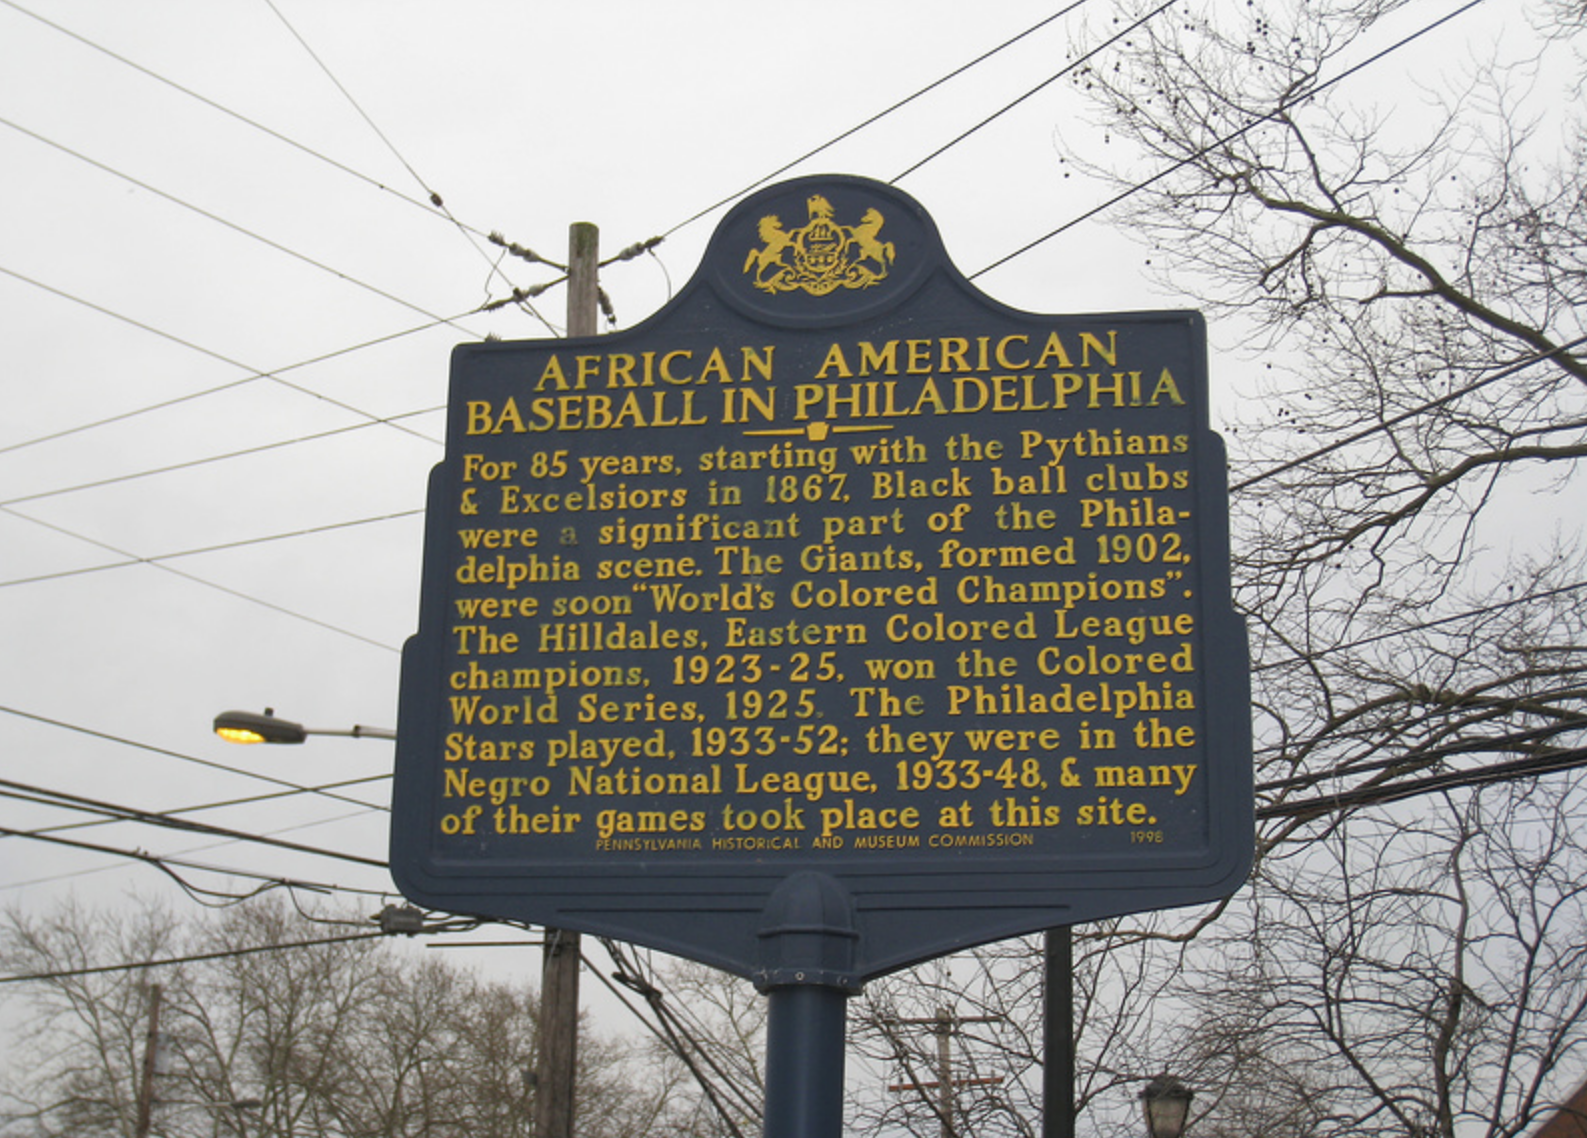  African American Baseball in Philadelphia Marker